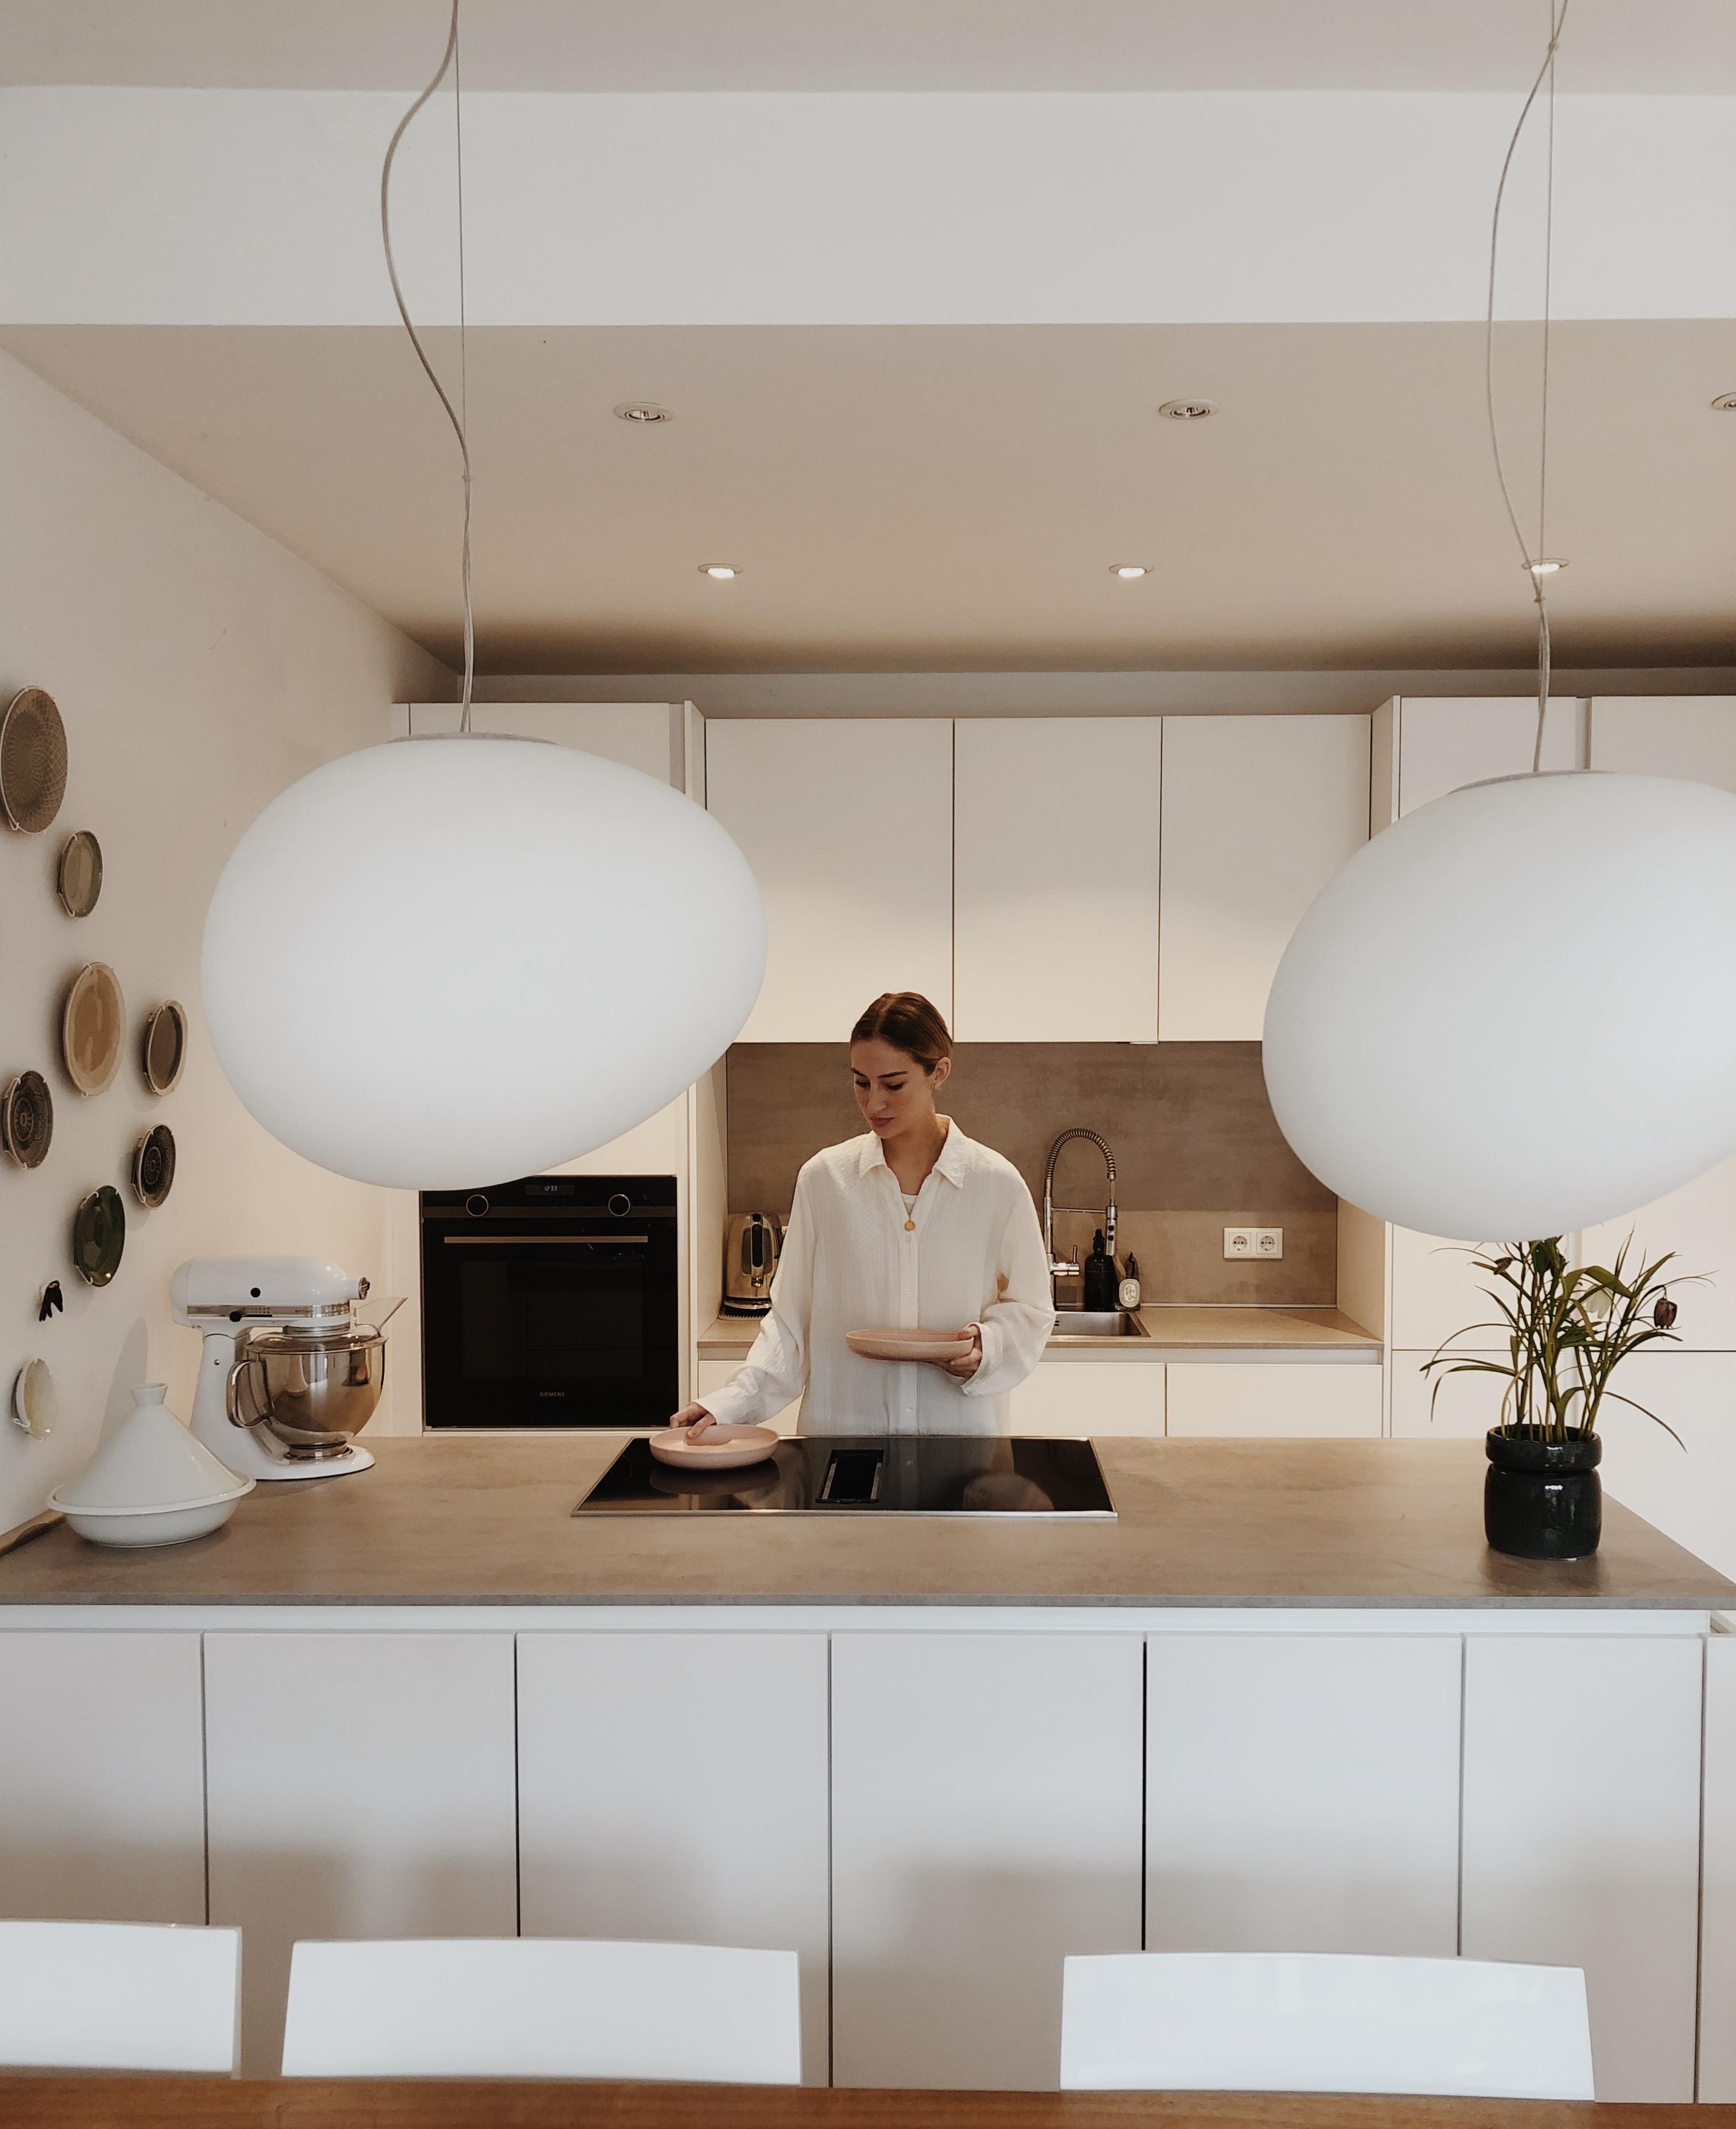 ...noch ein weiteres Küchenbild, diesmal von vorn und ohne den Fliesenboden 🤍
#küche #whitekitchen #zuhause #kitchen 